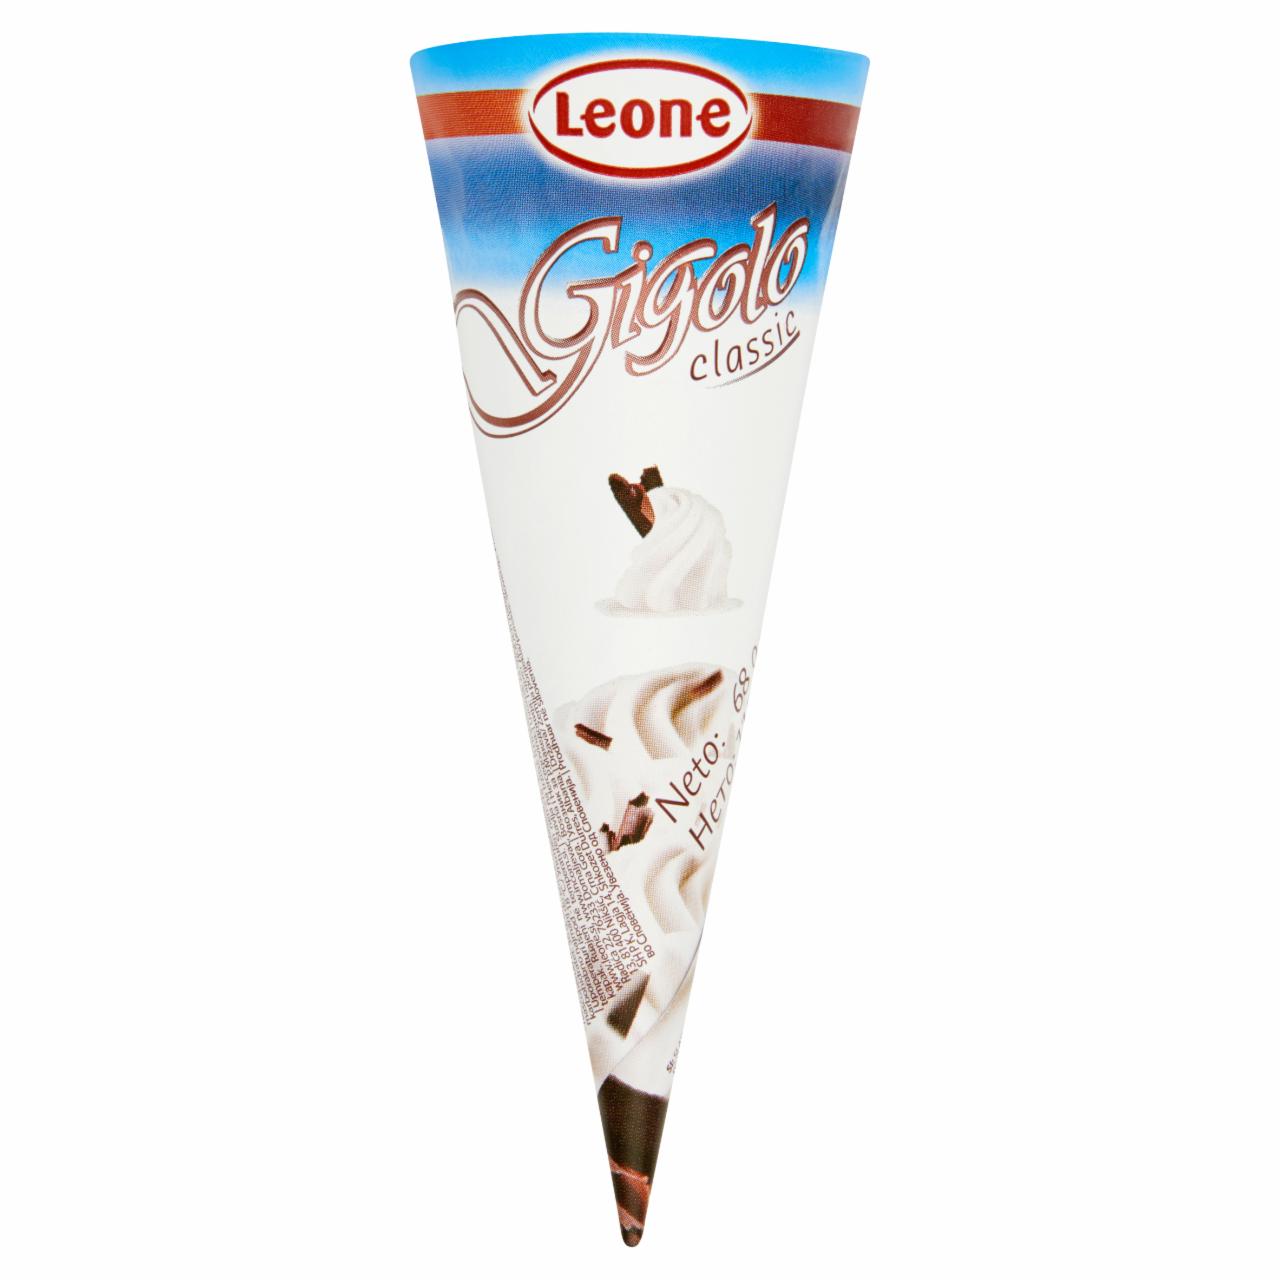 Képek - Leone Gigolo Classic vanília & kakaó tölcséres jégkrém 115 ml